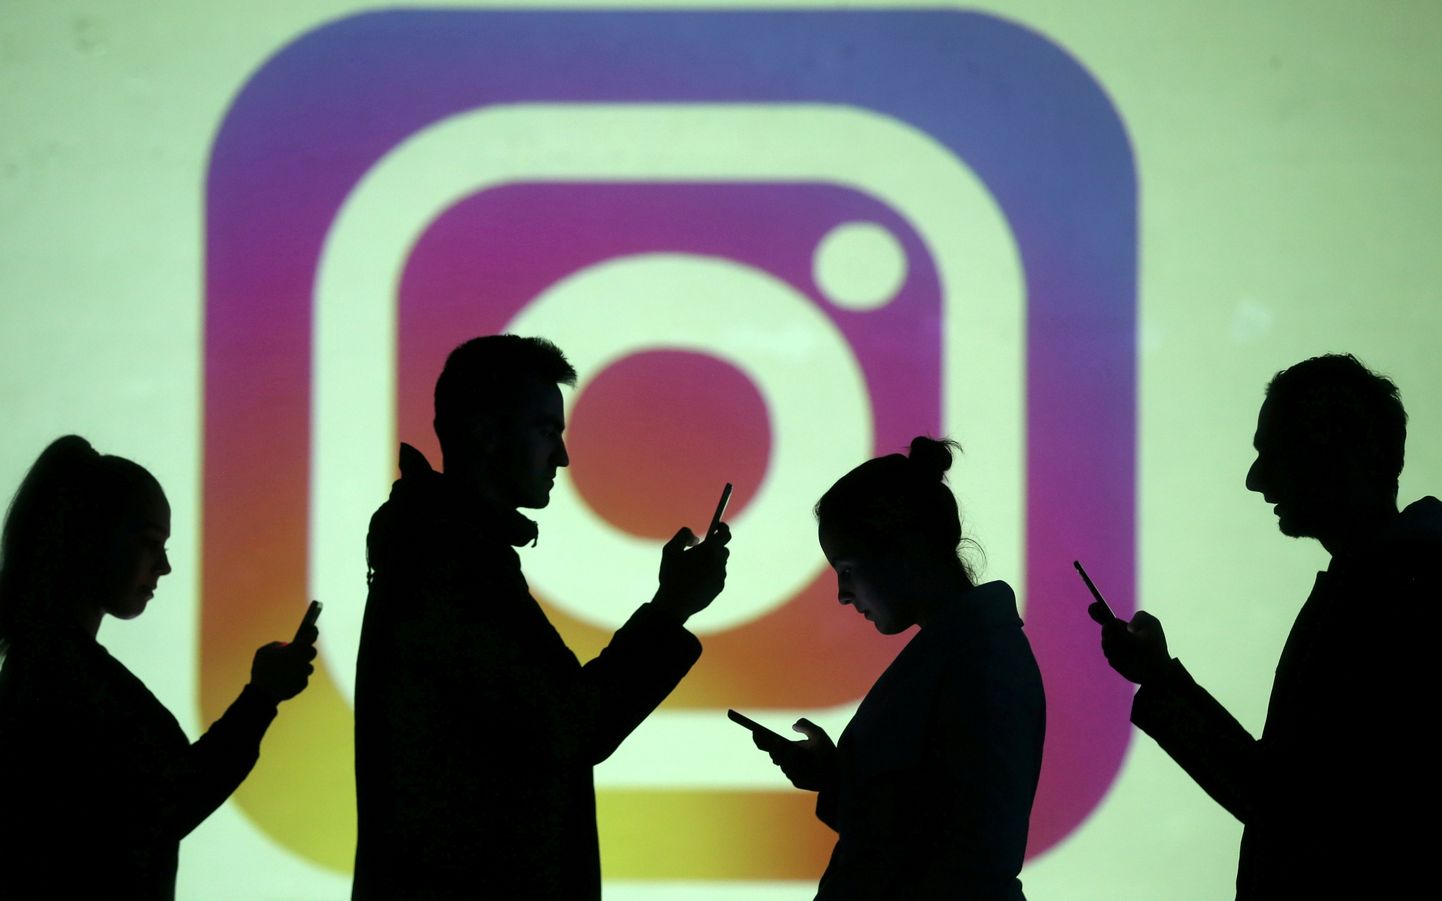 Instagrami kasutajad saavad varsti postituste juurest meeldimiste arvu peita